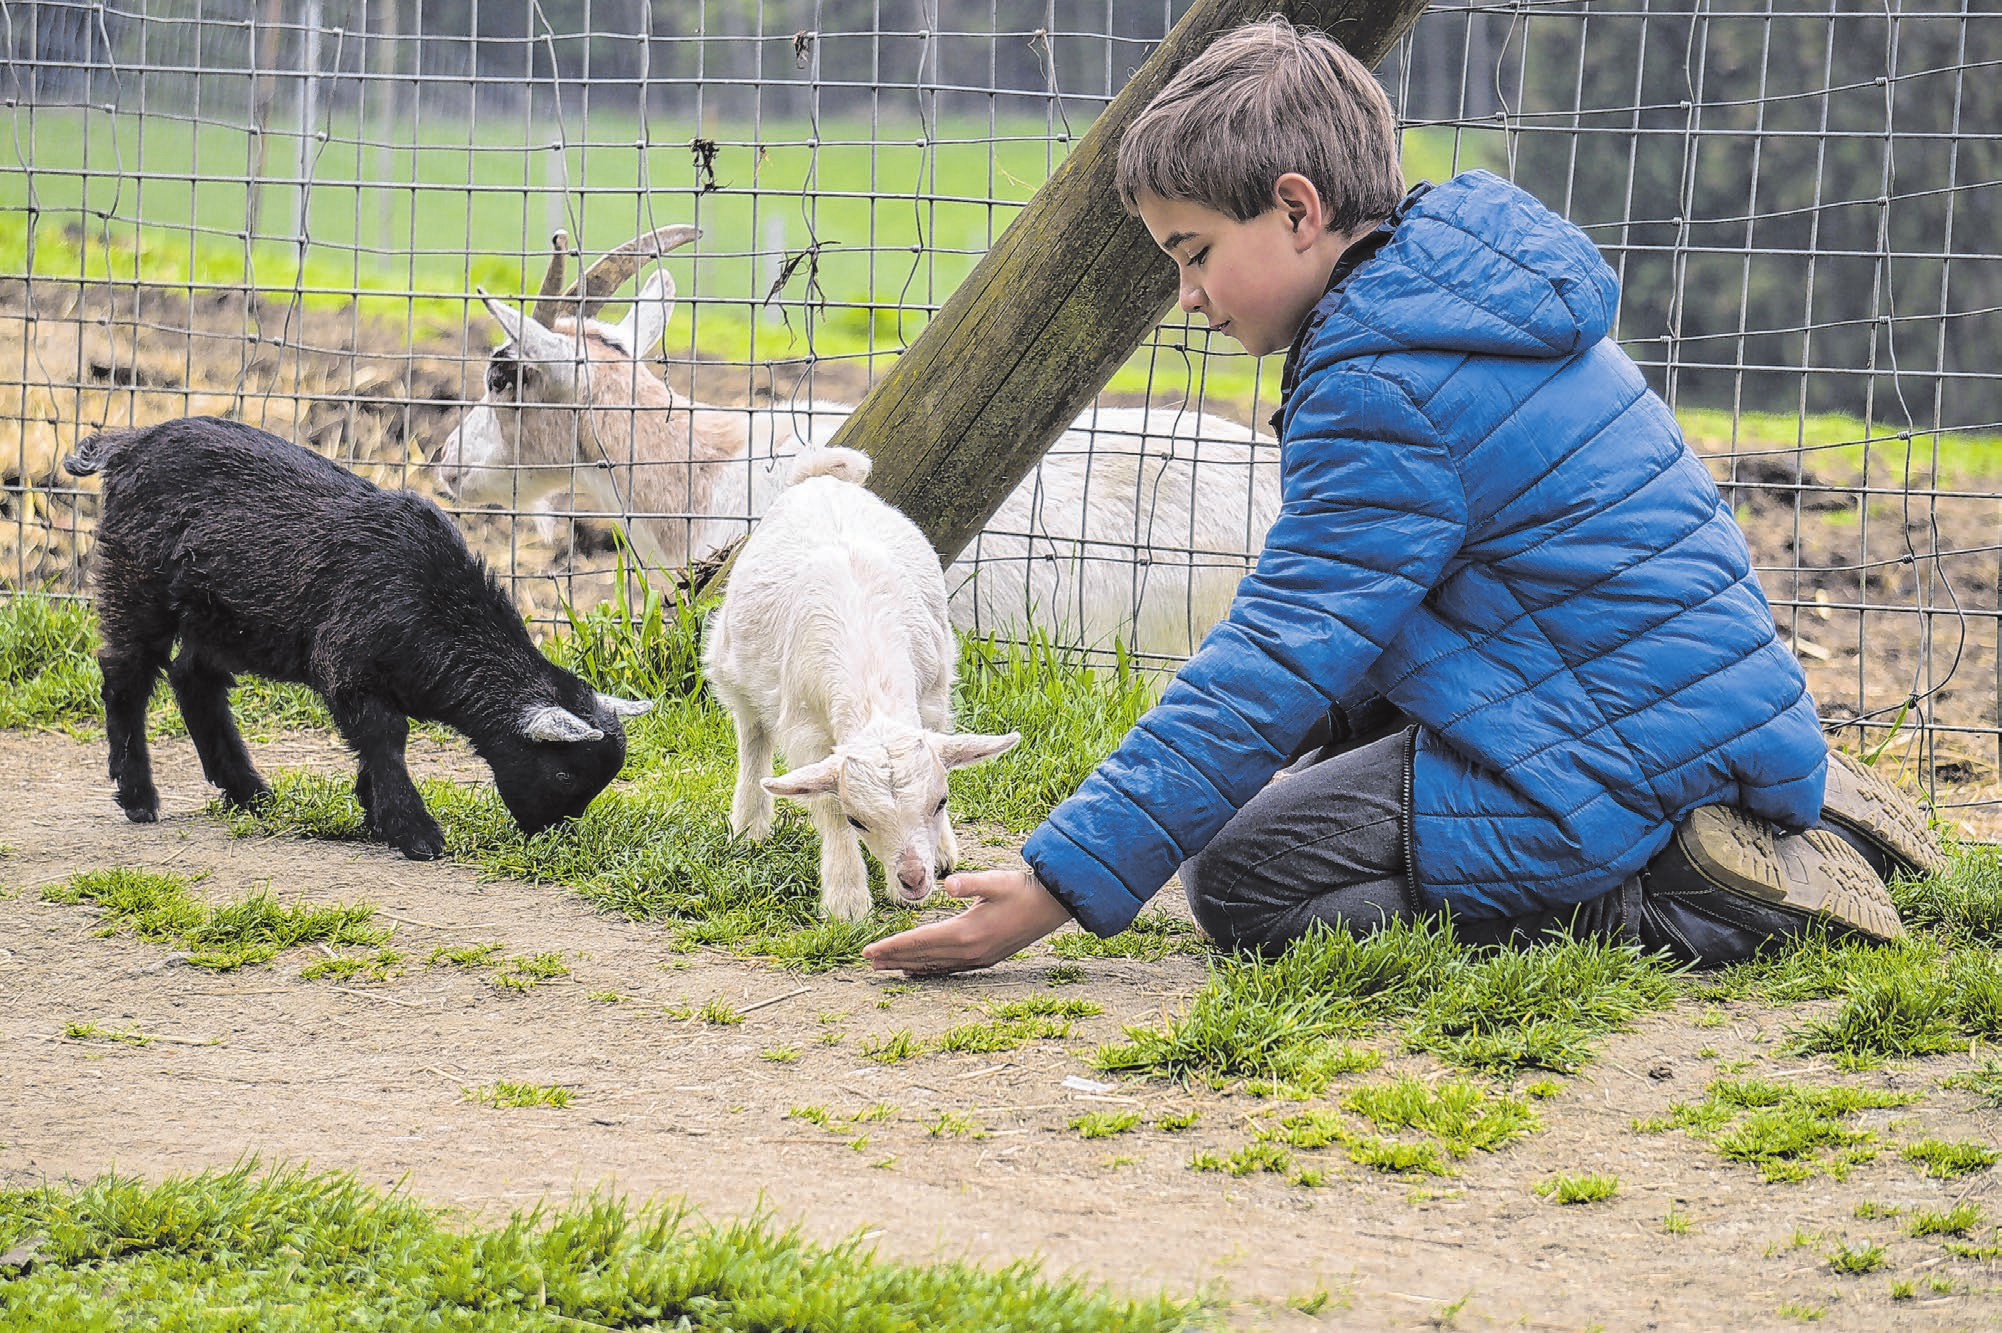 Tiere mal hautnah zu erleben, ist für Kinder eine wunderbare Erfahrung. Fotos: Alexandra_Koch/Pixabay; Andreas Petz; Uwe Hegewald